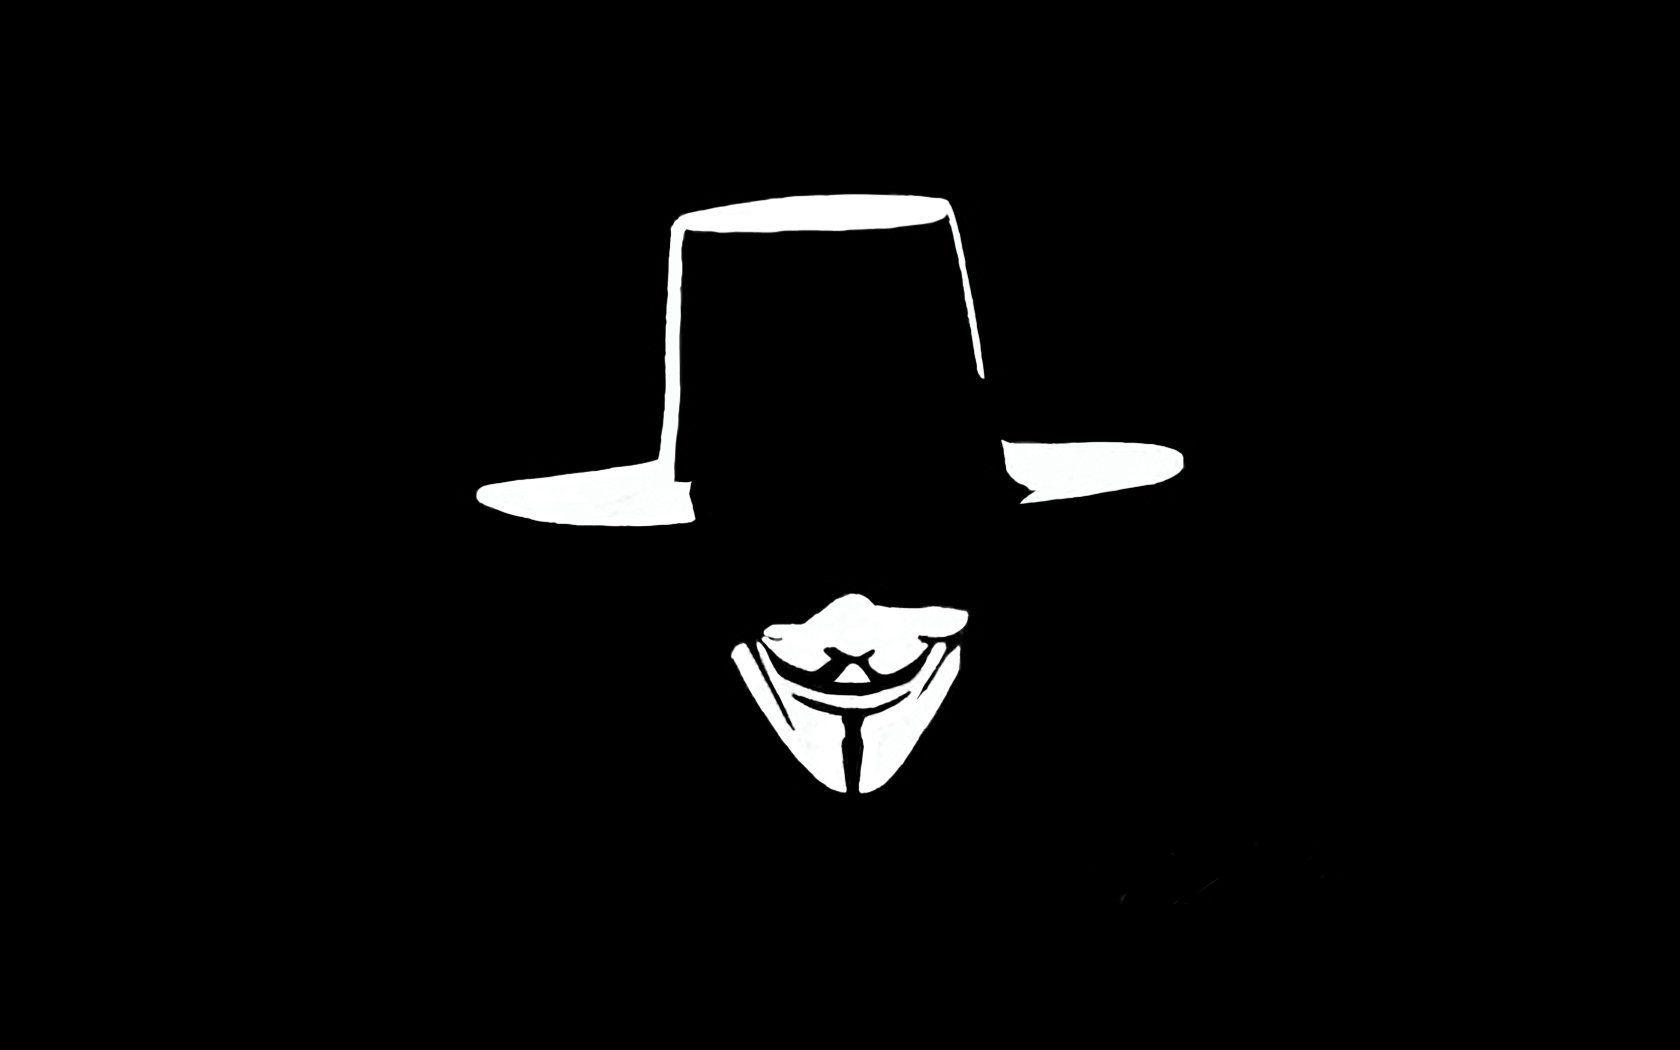 45+] Anonymous Mask Wallpaper - WallpaperSafari